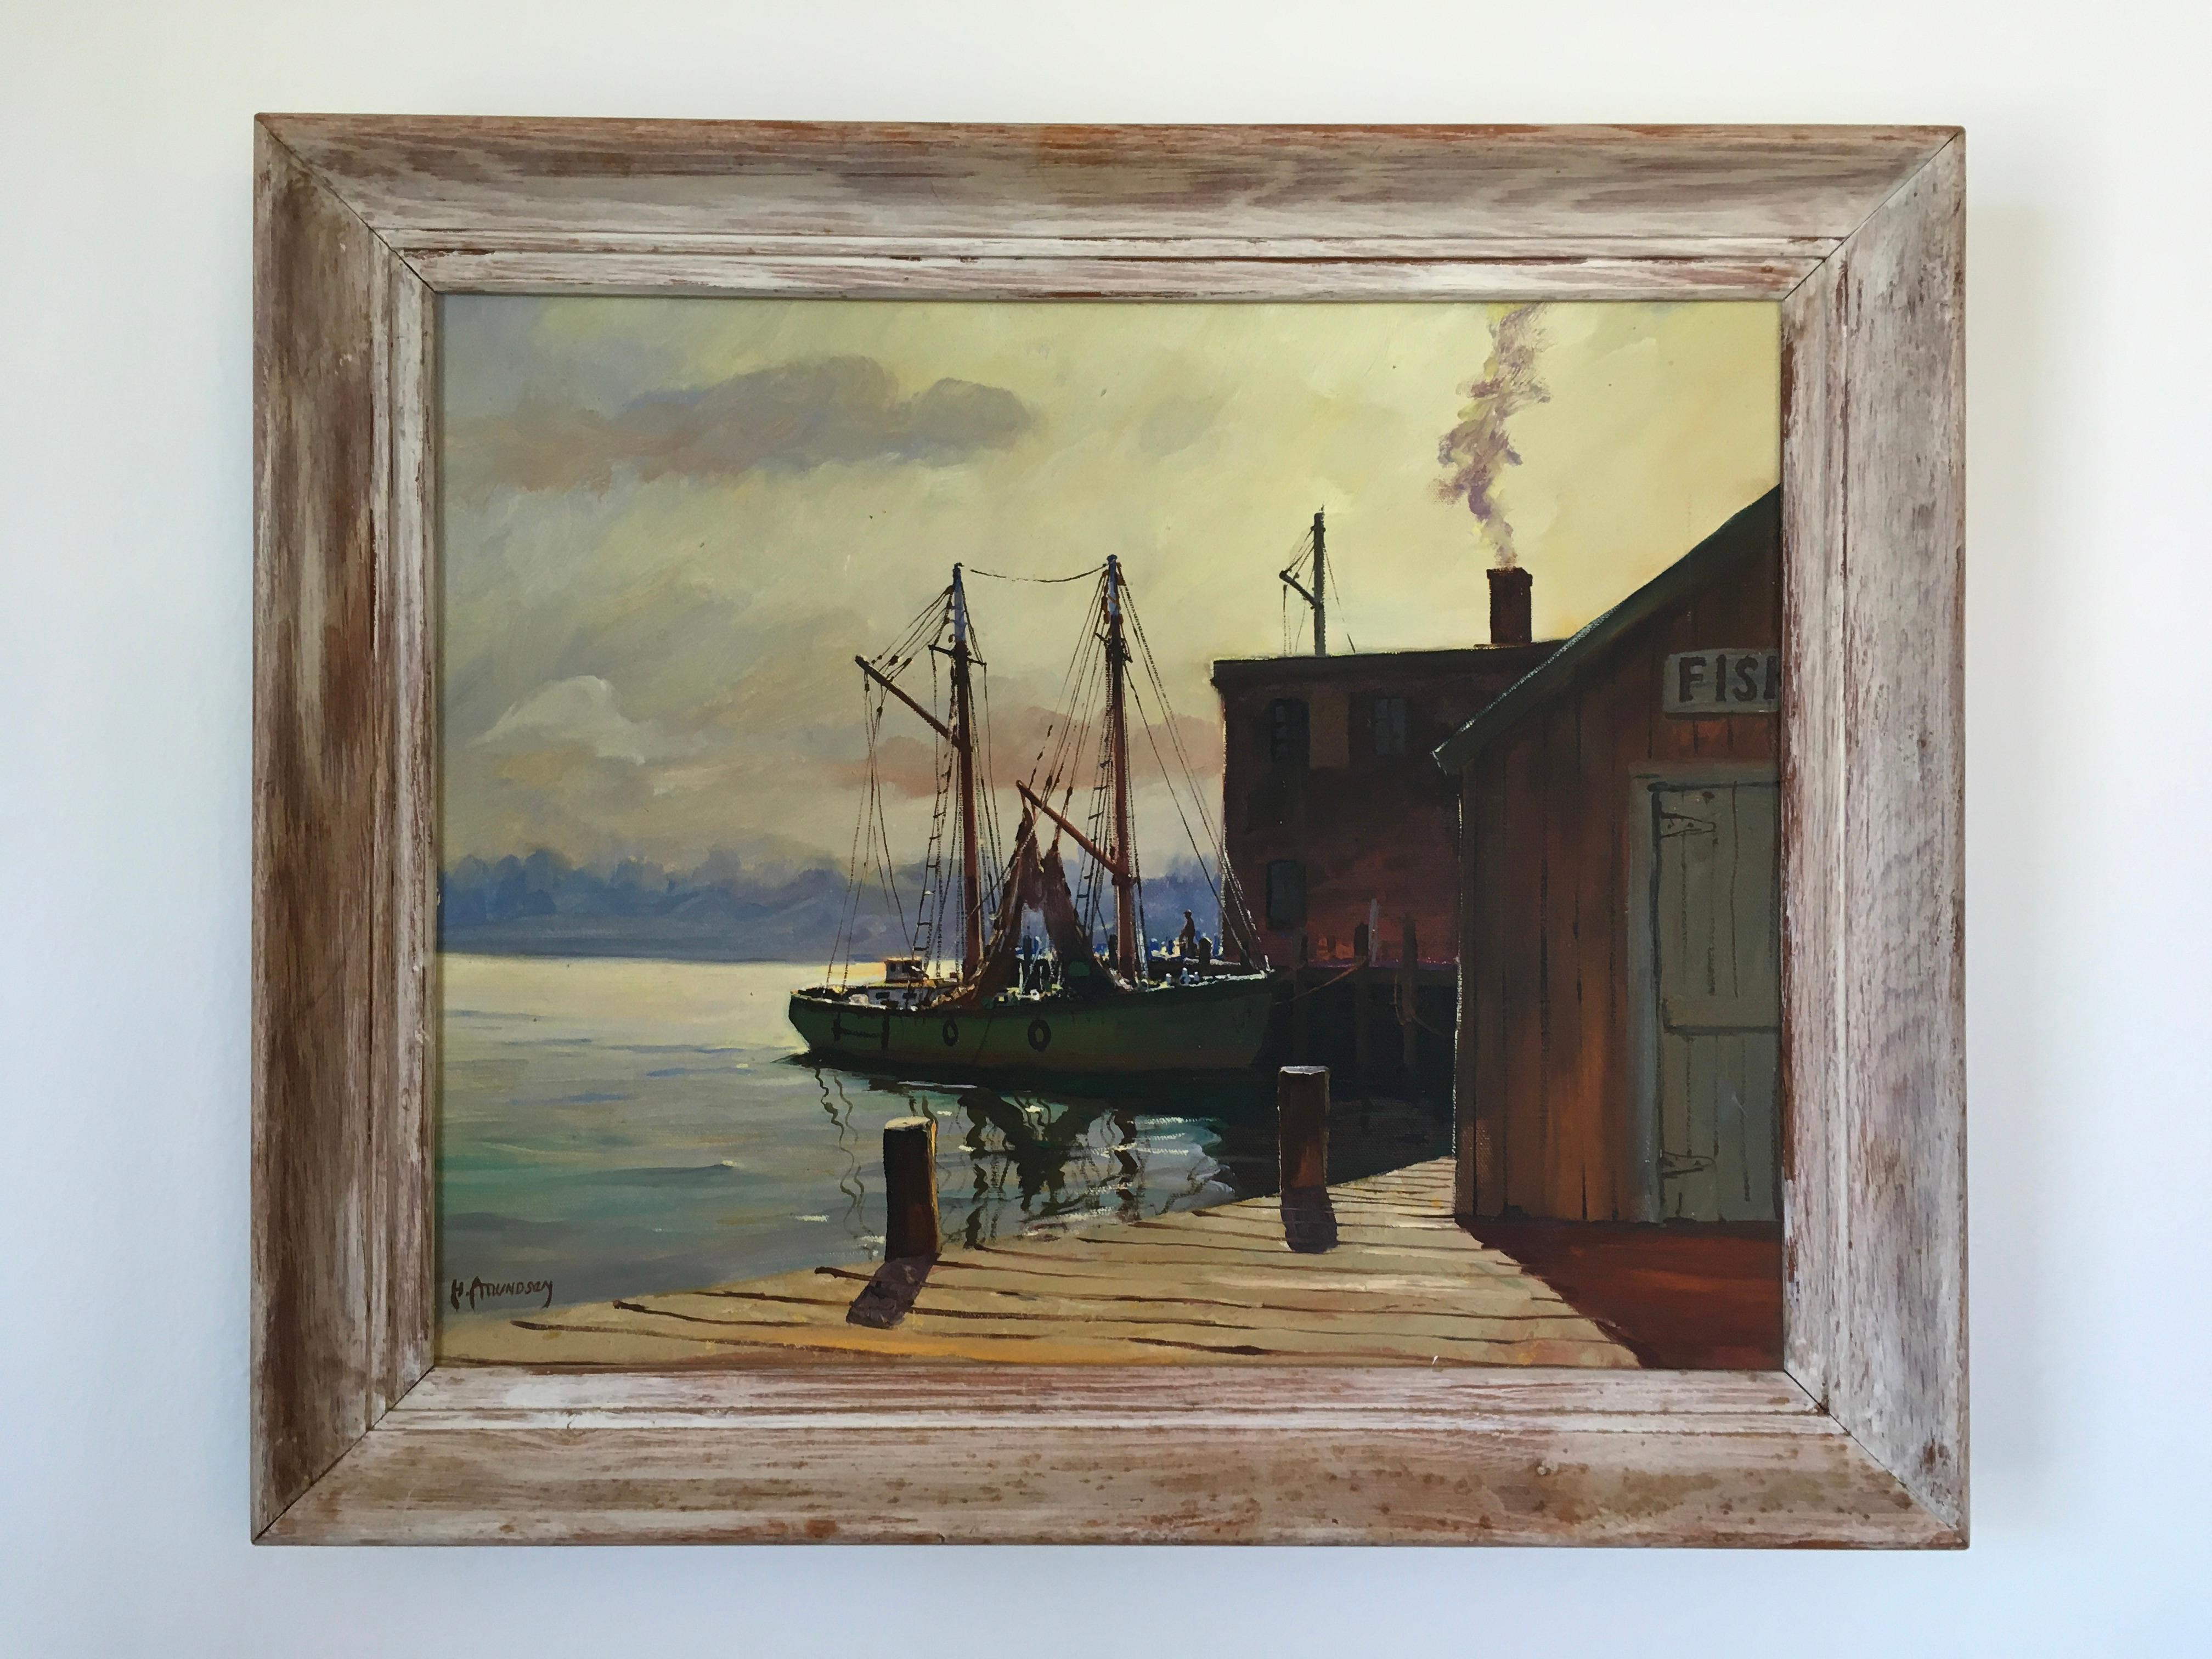 C Hjalmar Amundsen Landscape Painting - 'Boats at Dock', by C. Hjalmar Amundsen, Oil on Canvas Painting